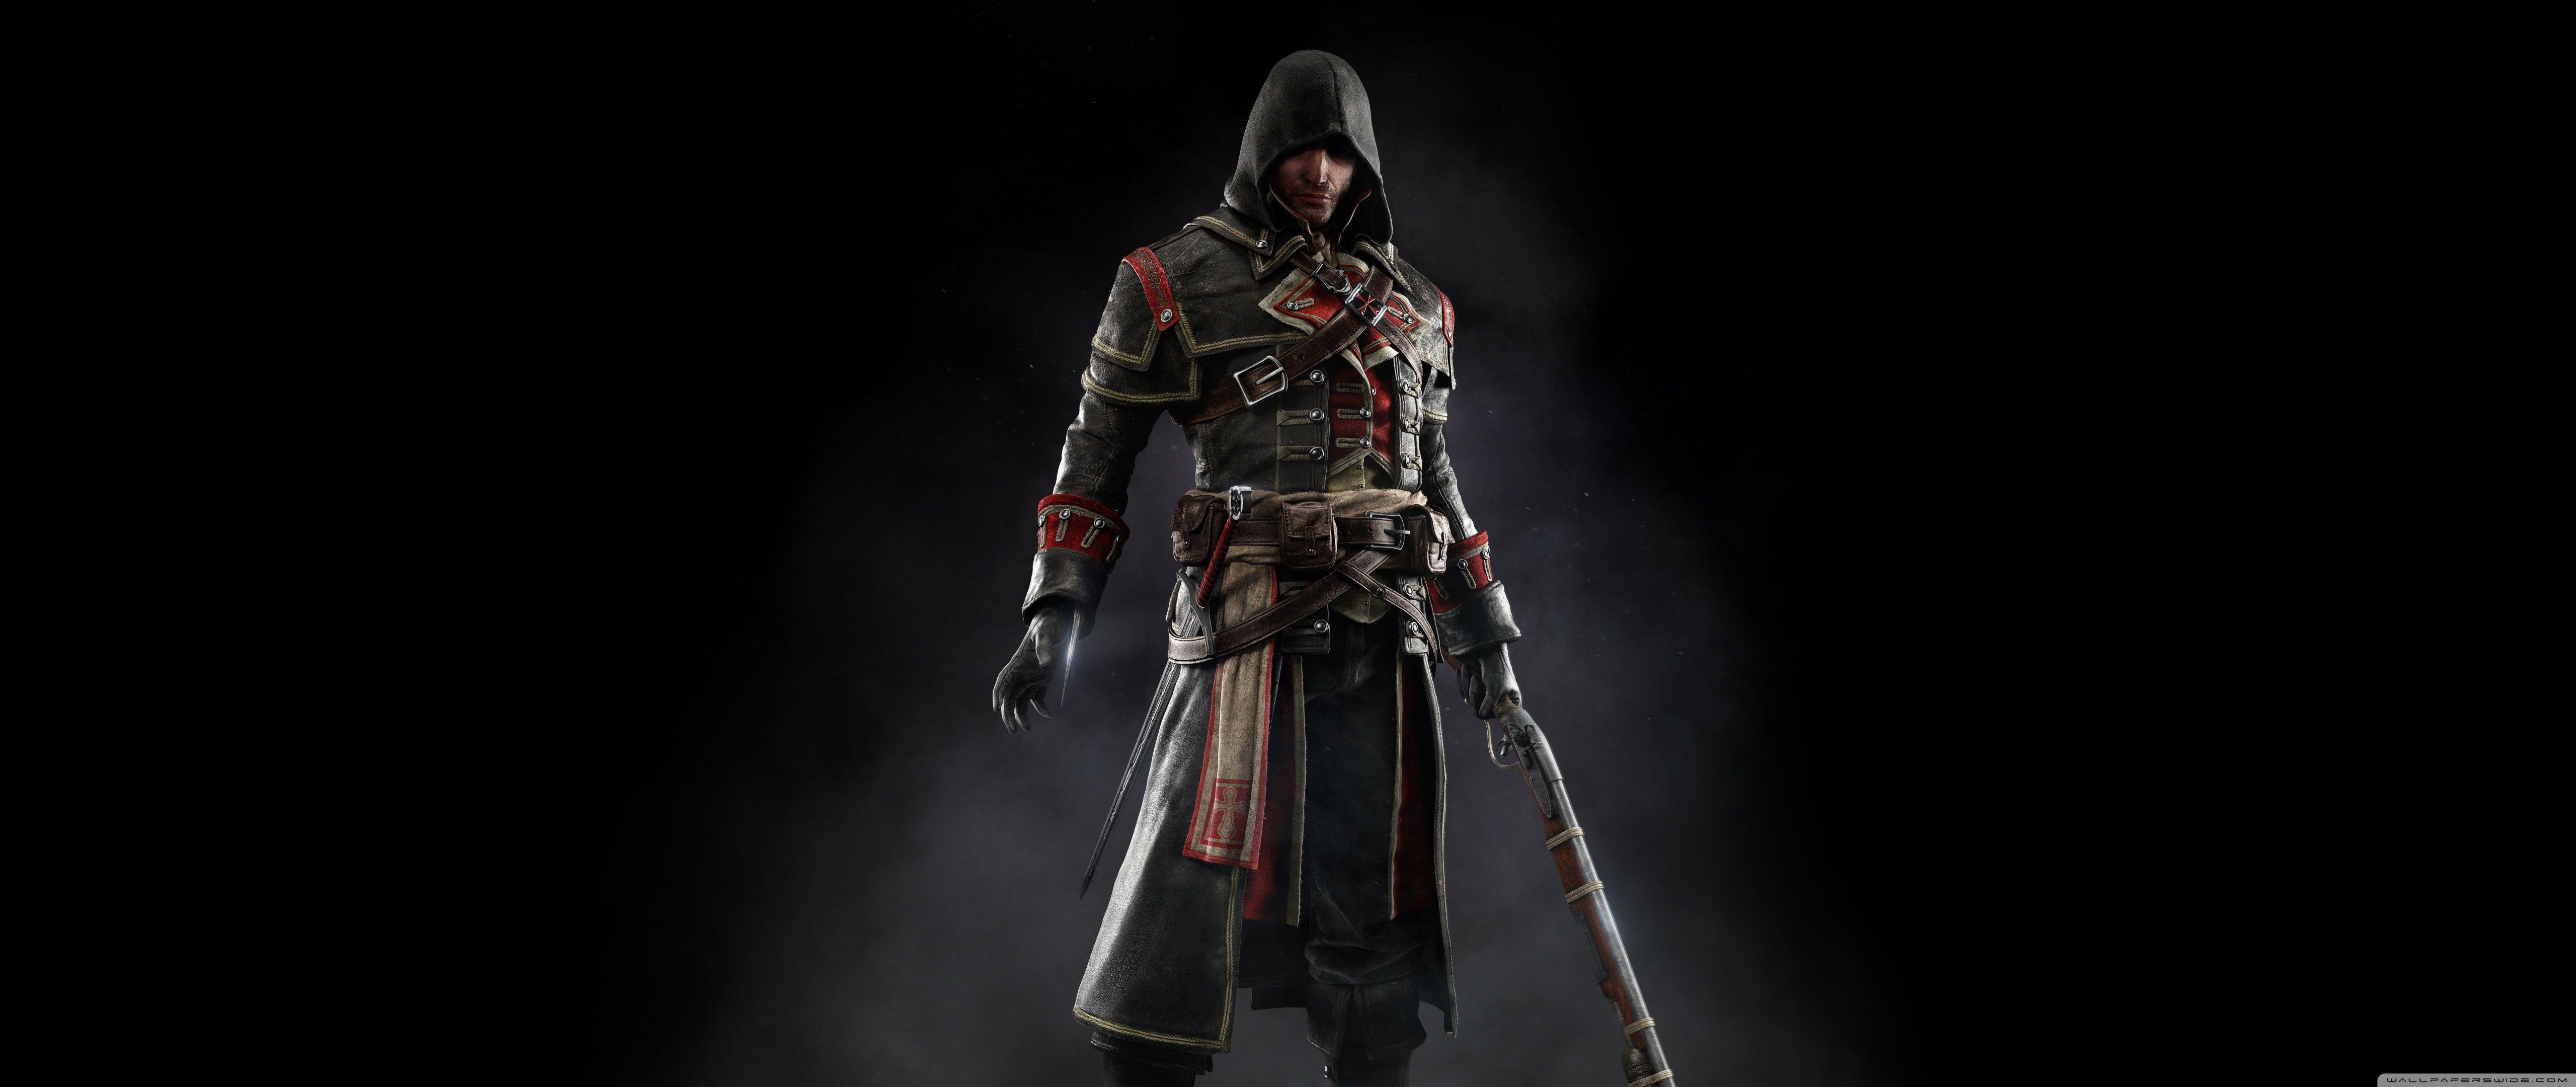 Assassin's Creed Rogue HD desktop wallpaper